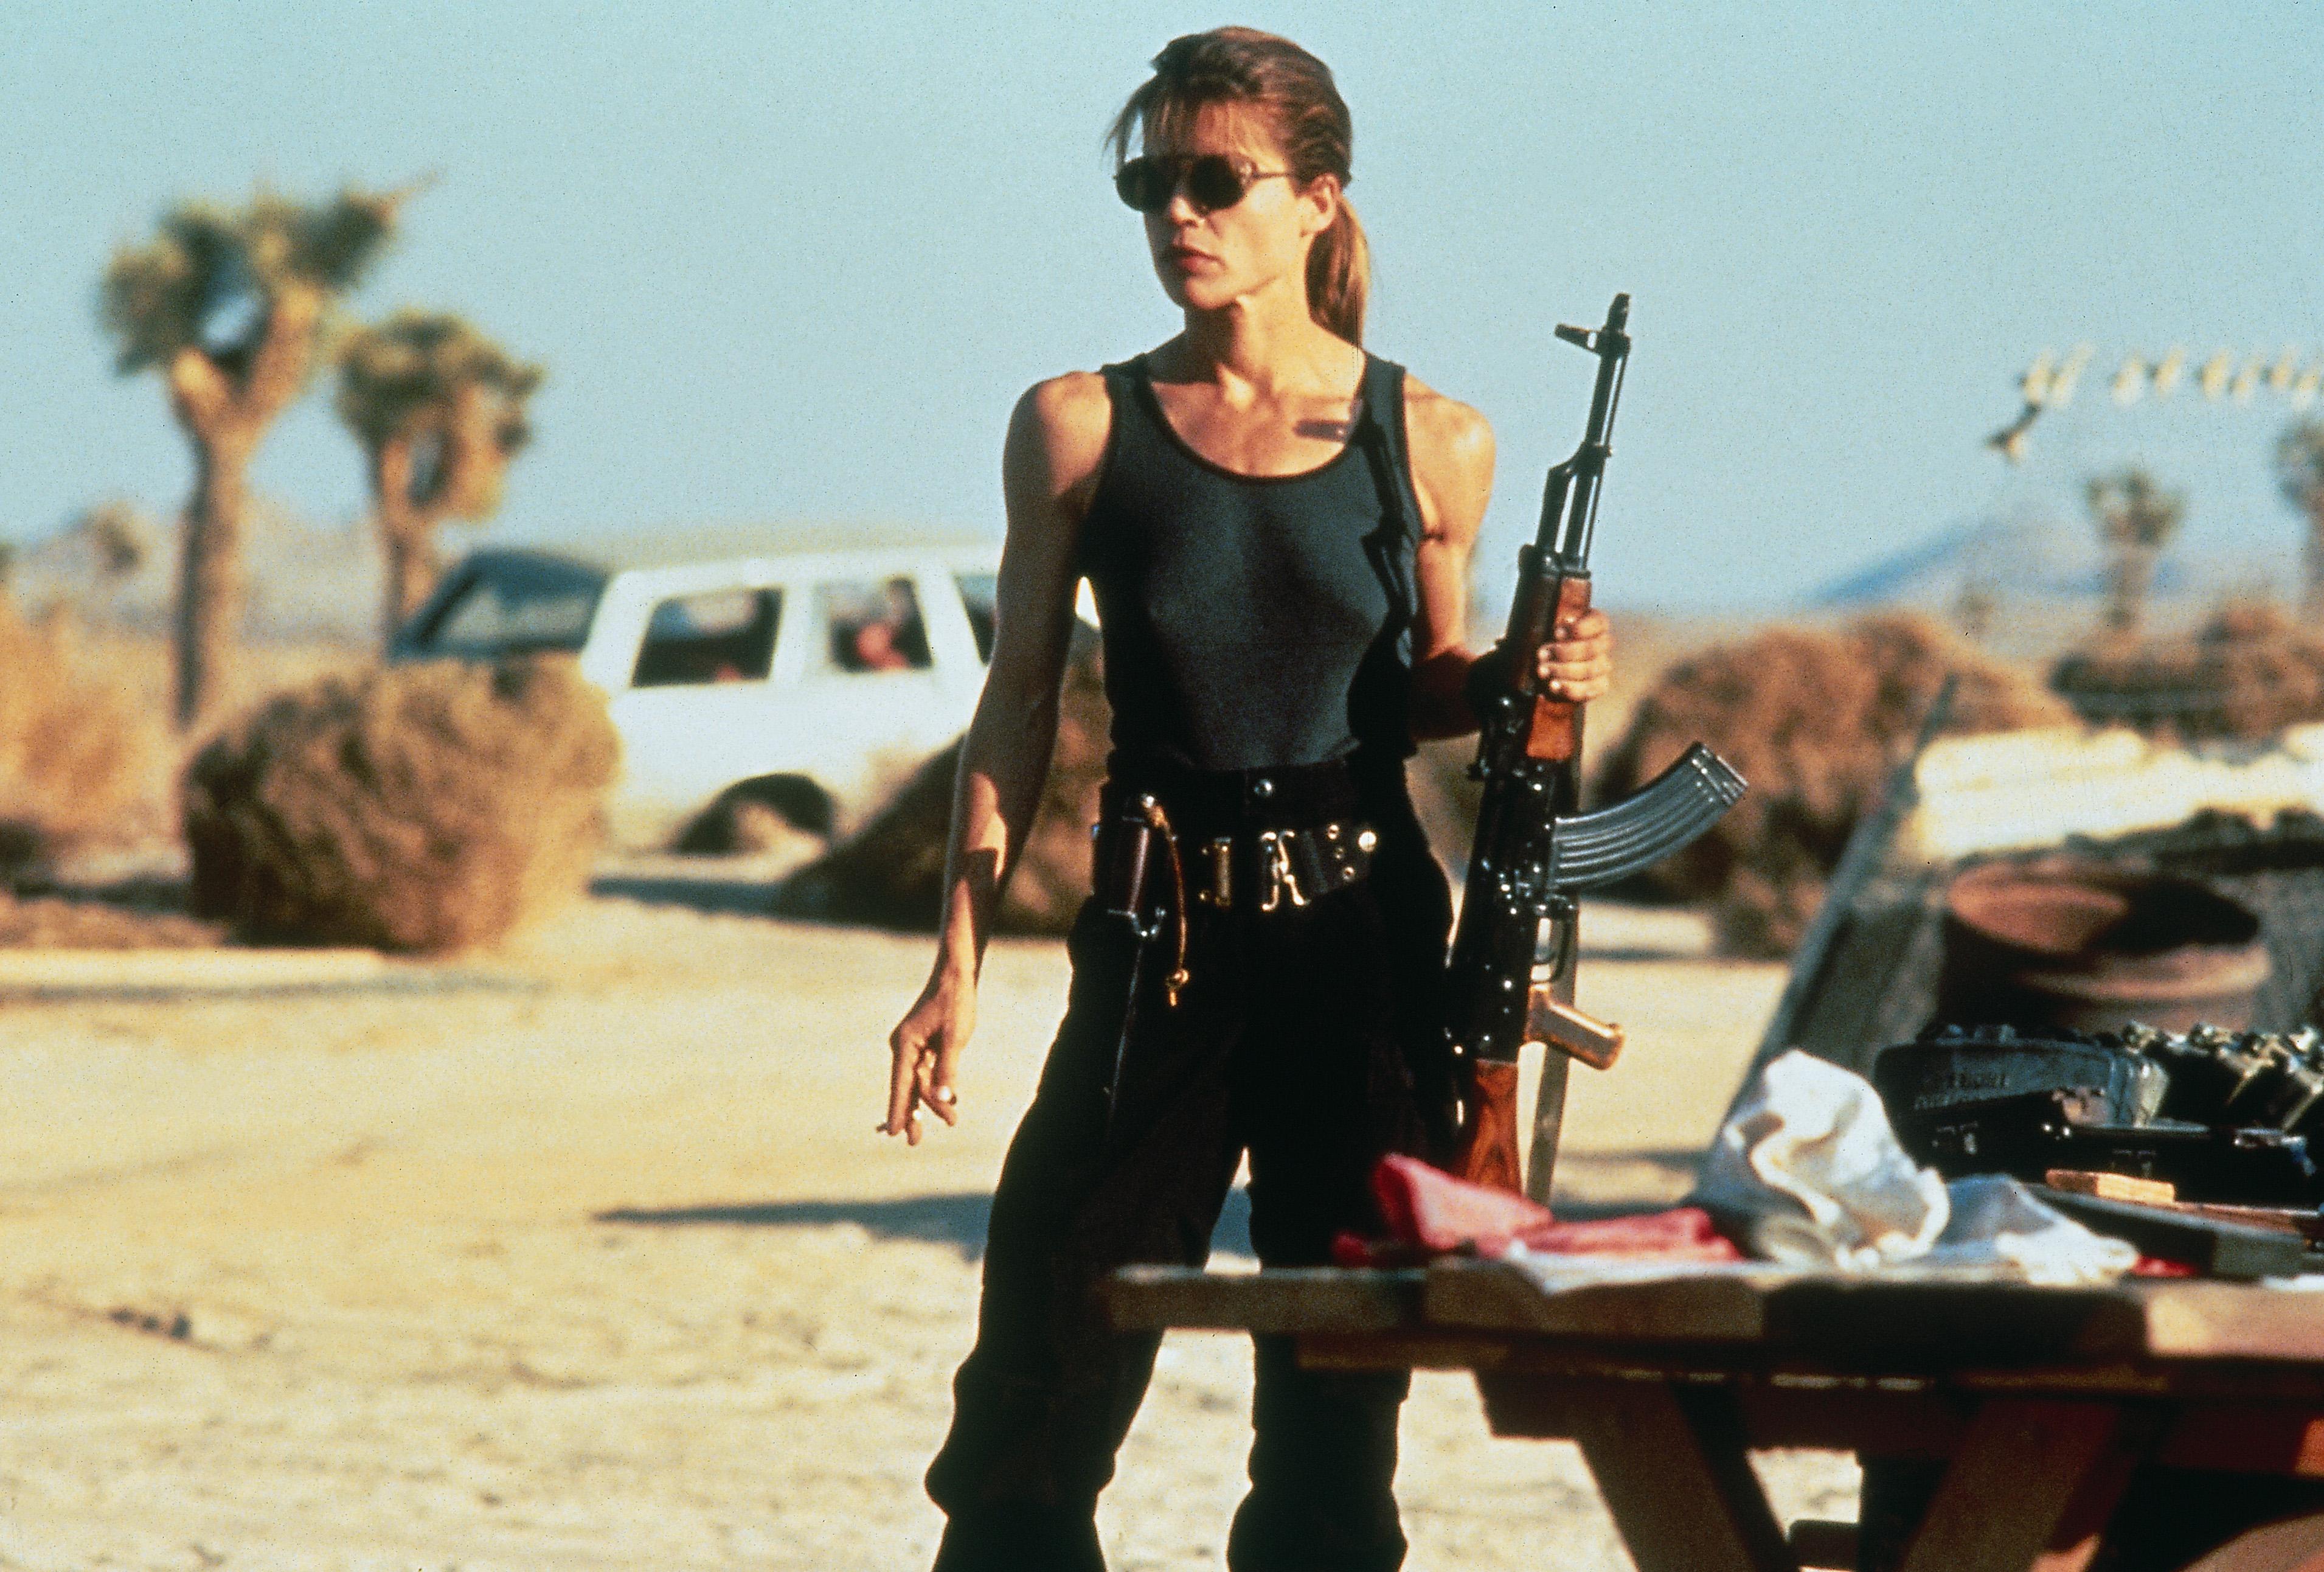 Meilleurs films Netflix : Terminator 2 Judgment Day